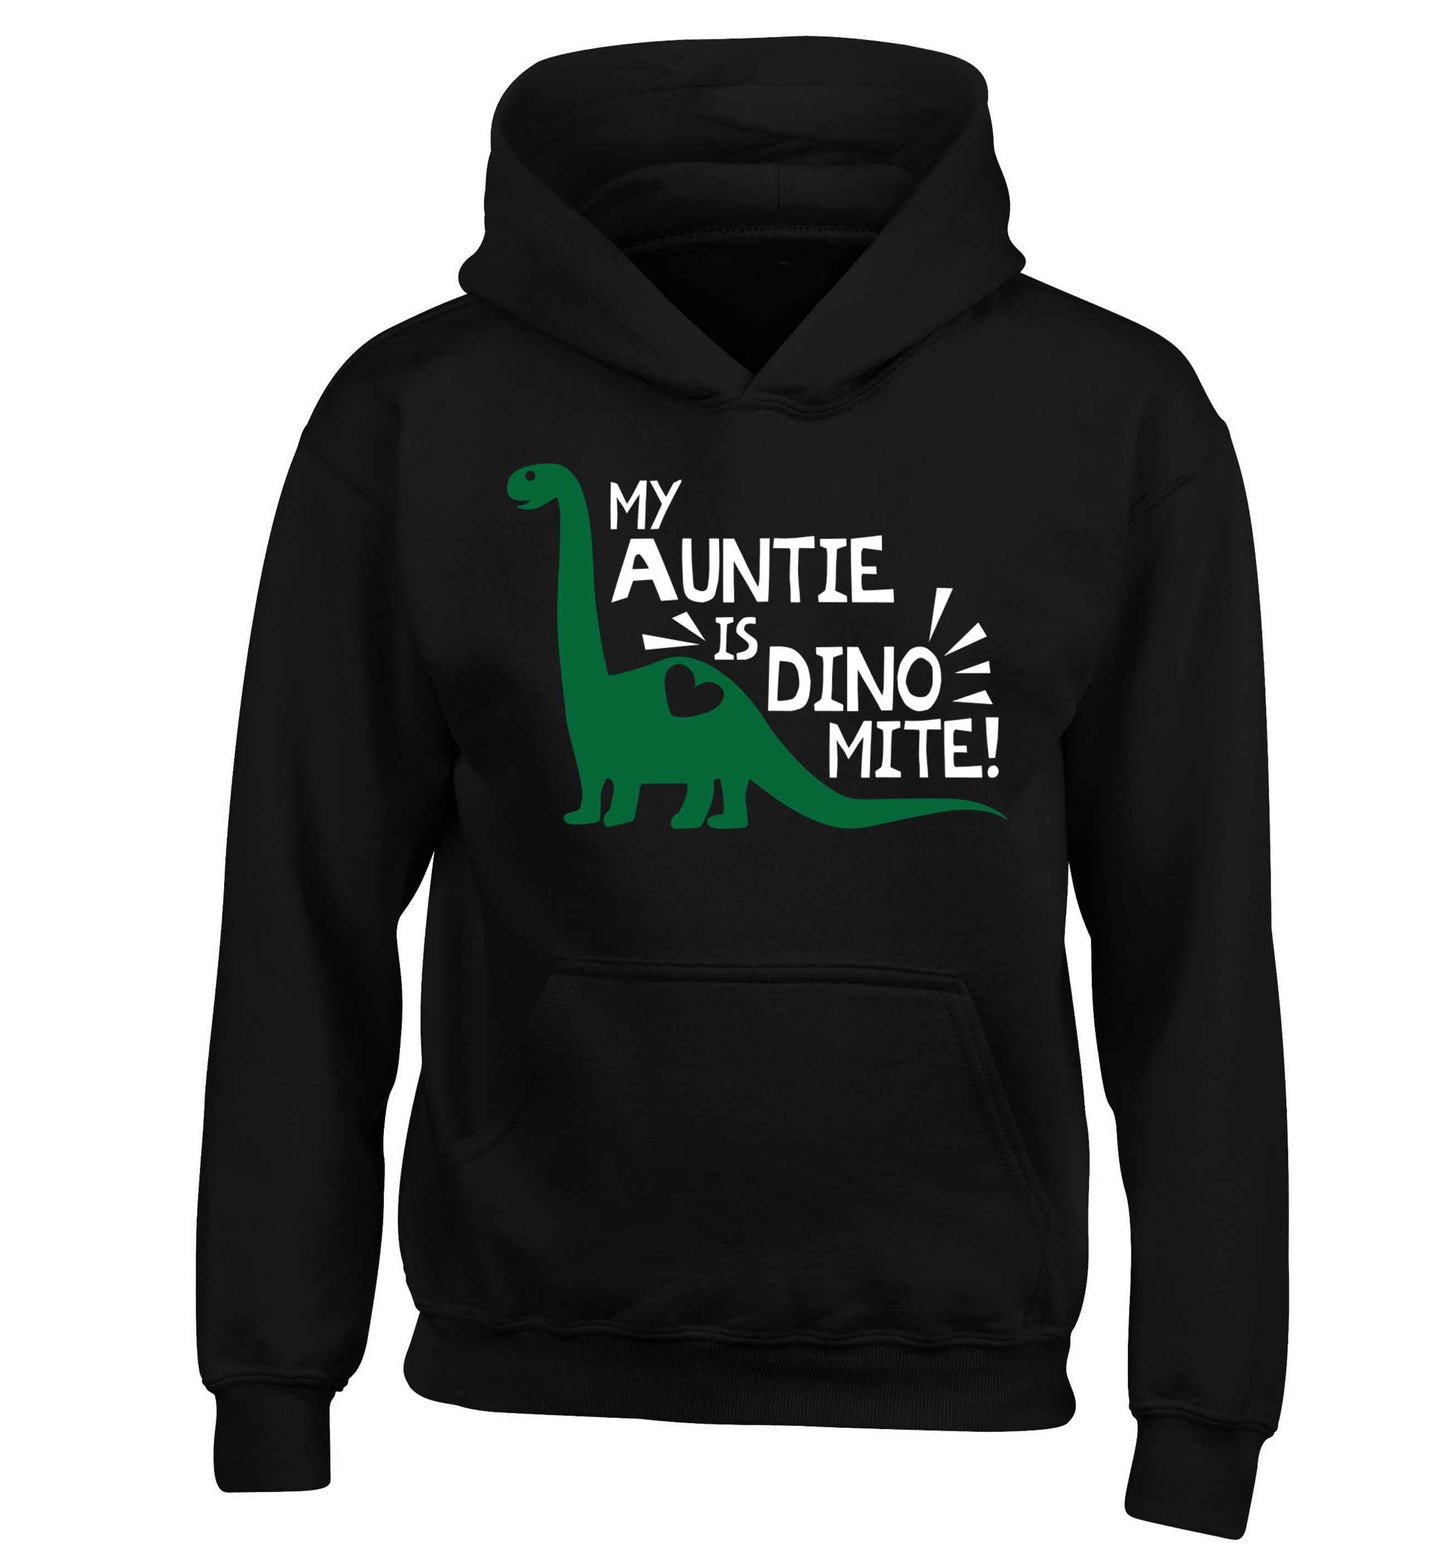 My auntie is dinomite! children's black hoodie 12-13 Years